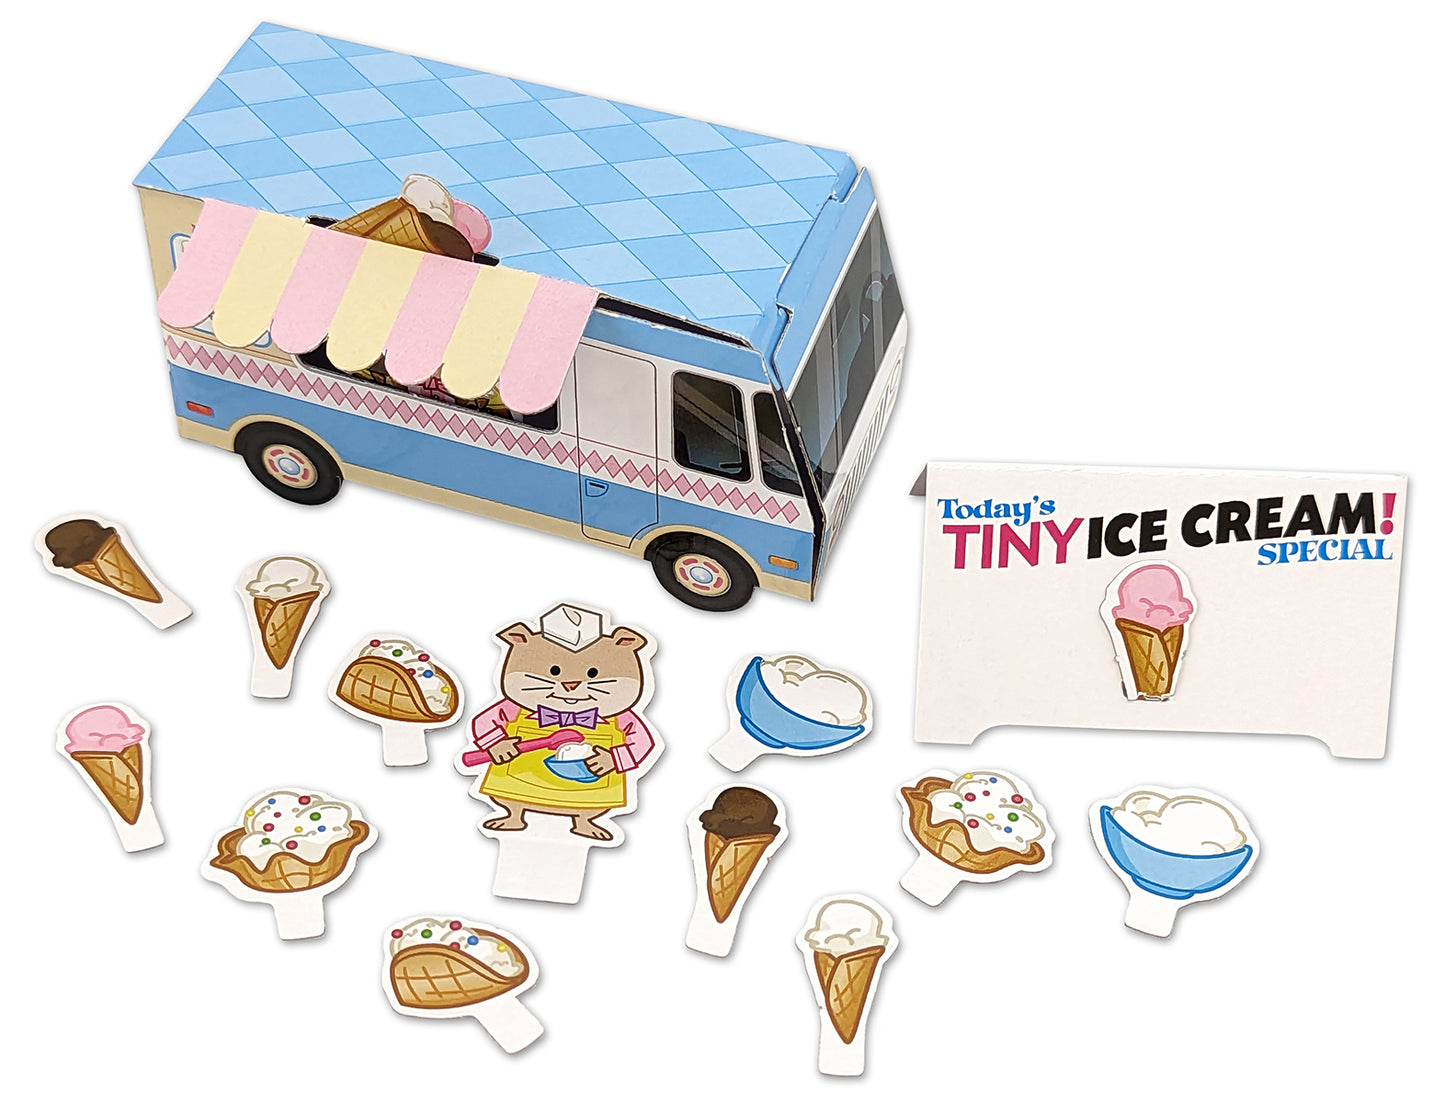 Tiny Ice Cream!